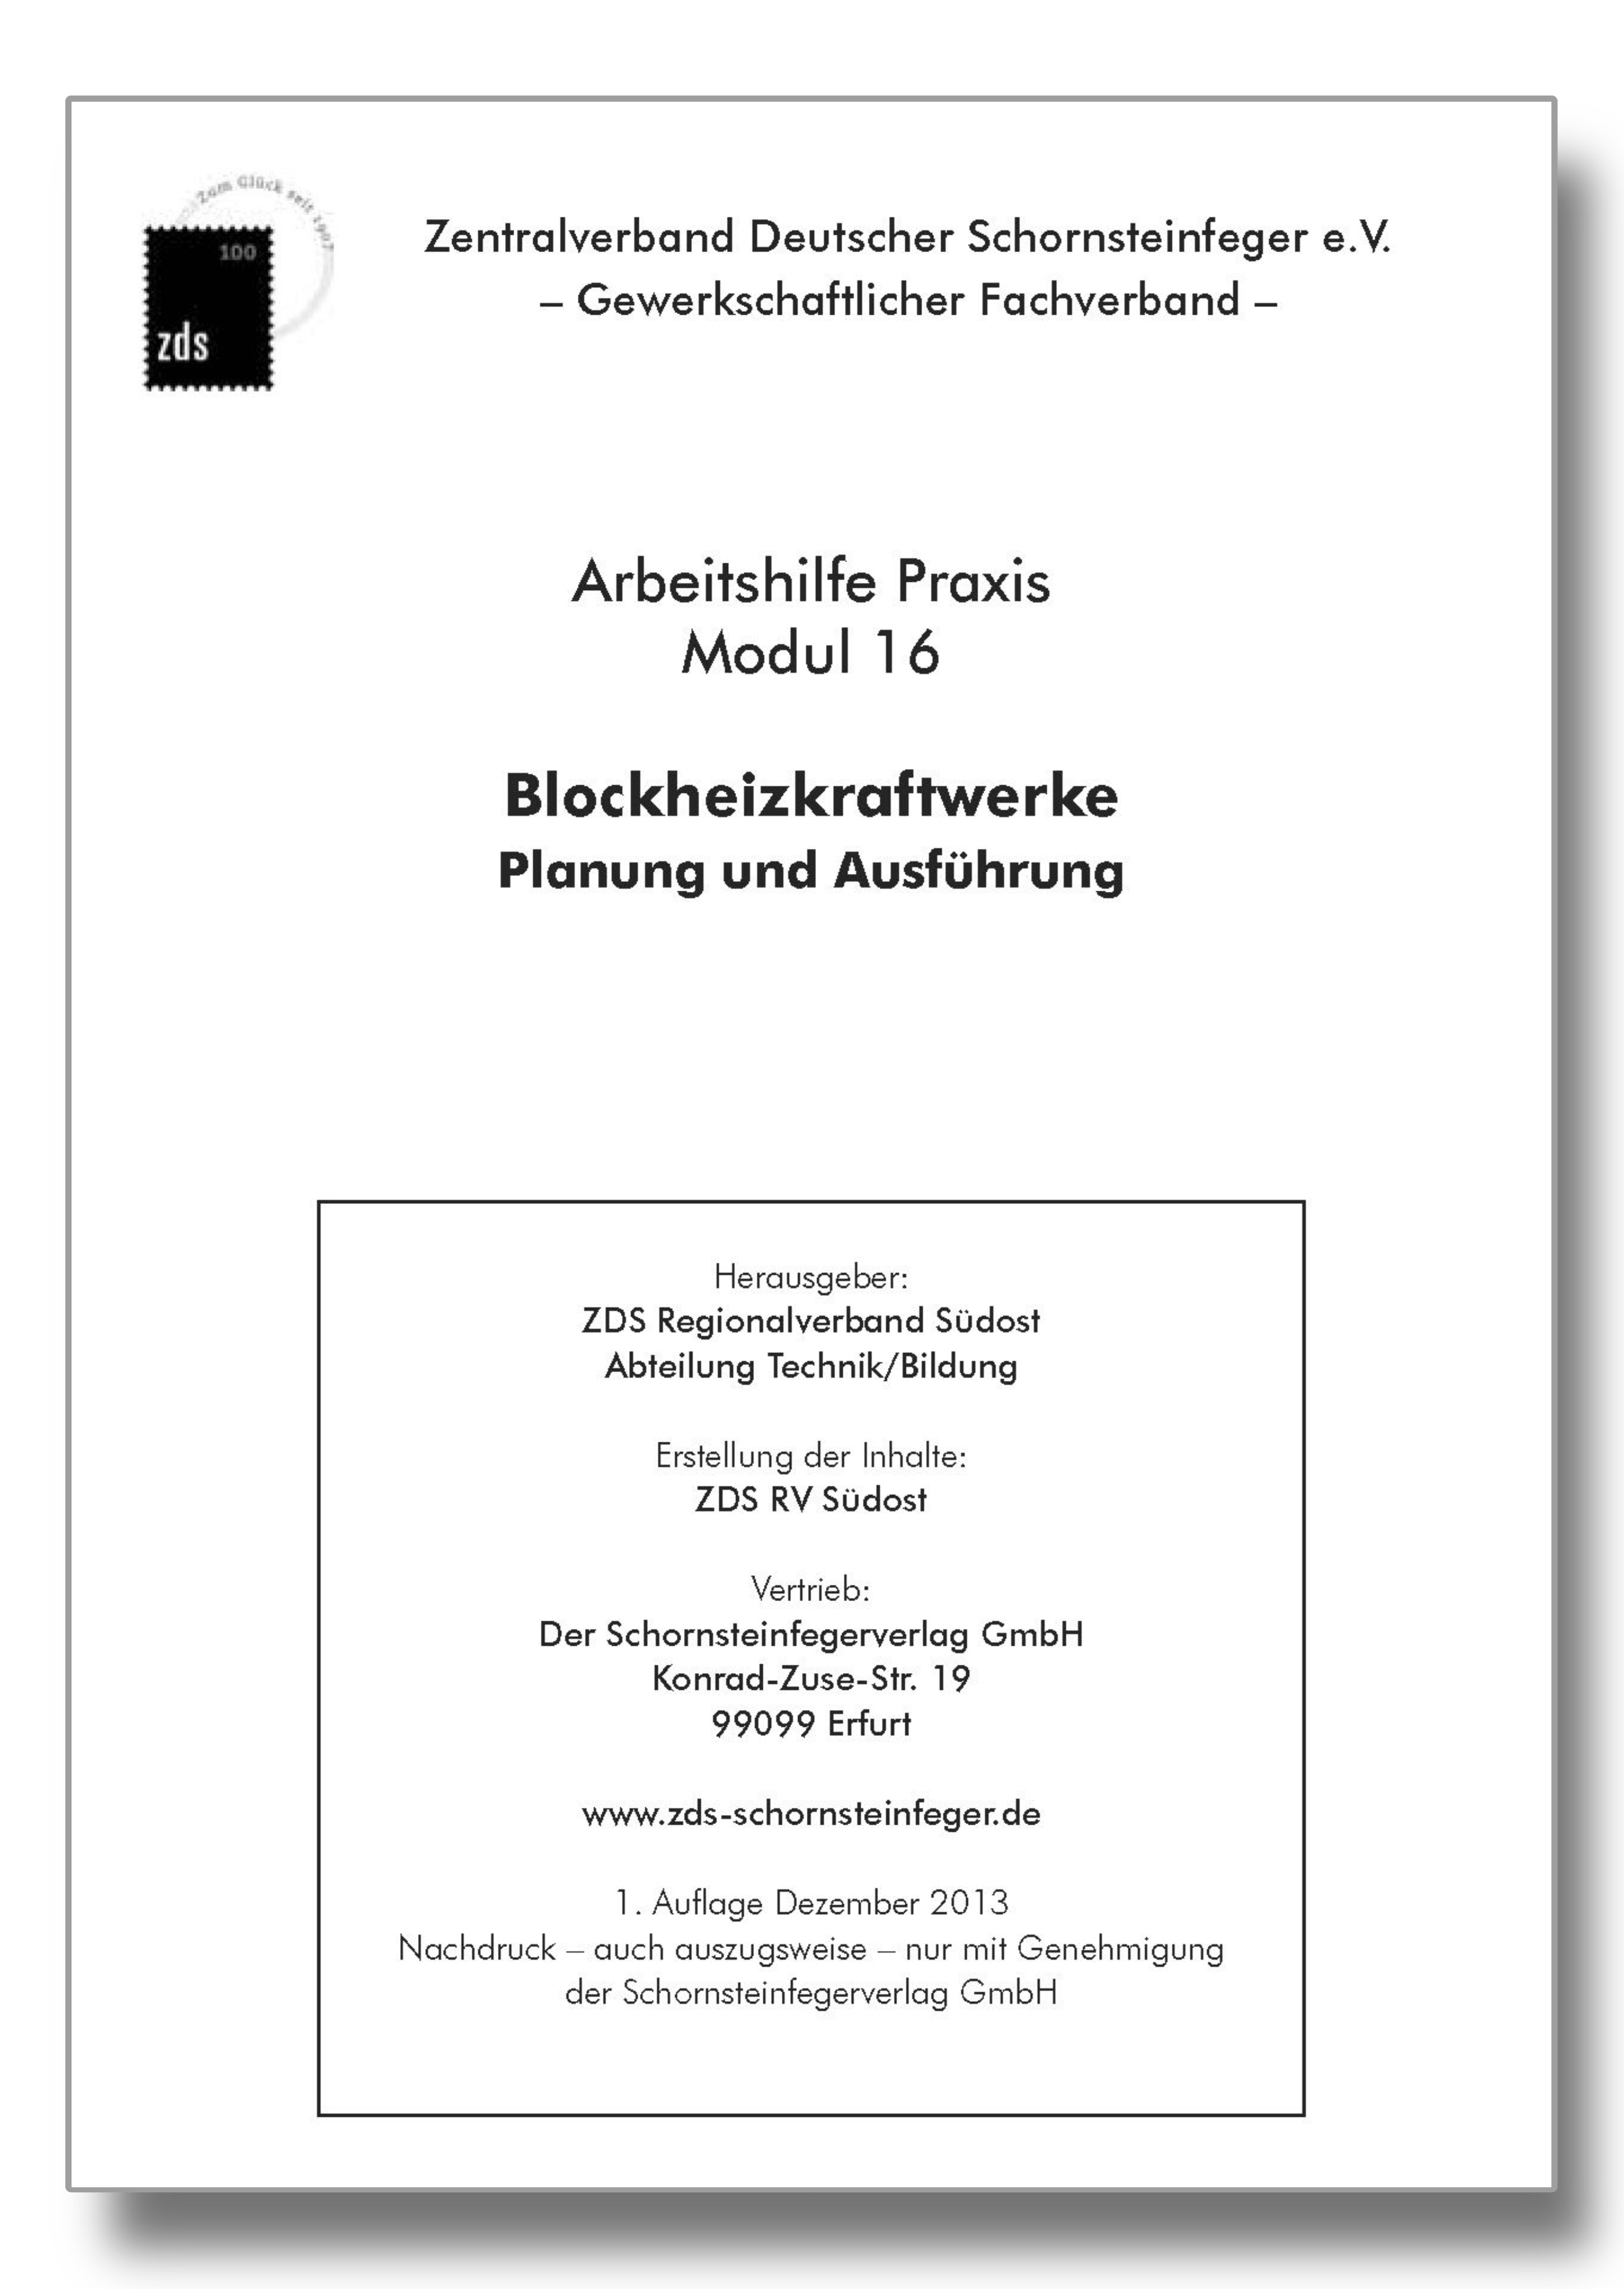 ZDS AH P Modul 16 - Blockheizkraftwerke (Planung und Ausführung) - Arbeitskarte